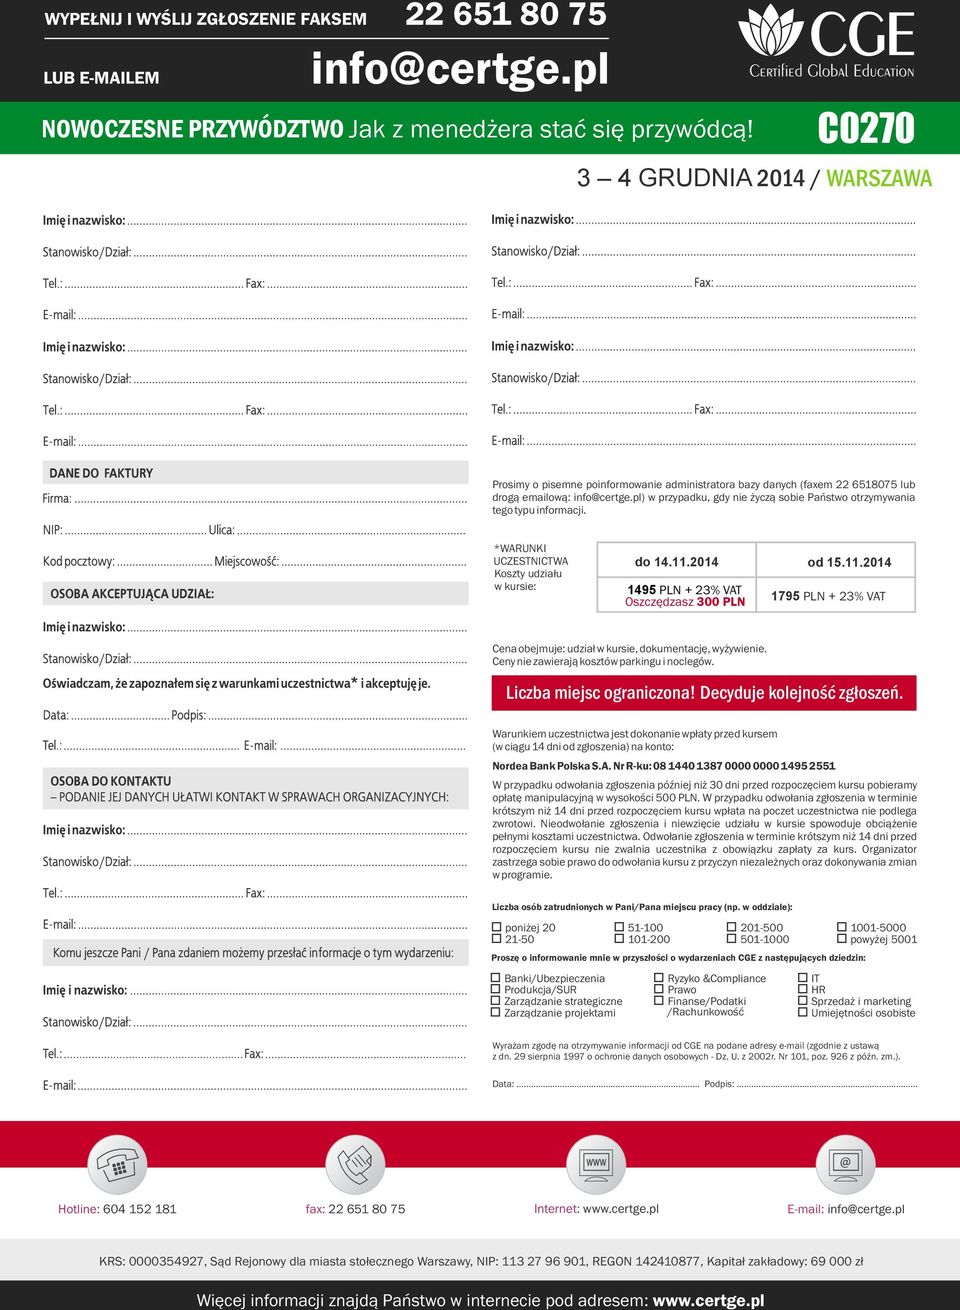 *WARUNKI UCZESTNICTWA Koszty udziału w kursie: do 14.11.2014 od 15.11.2014 1495 PLN + 23% VAT Oszczędzasz 300 PLN 1795 PLN + 23% VAT Cena obejmuje: udział w kursie, dokumentację, wyżywienie.